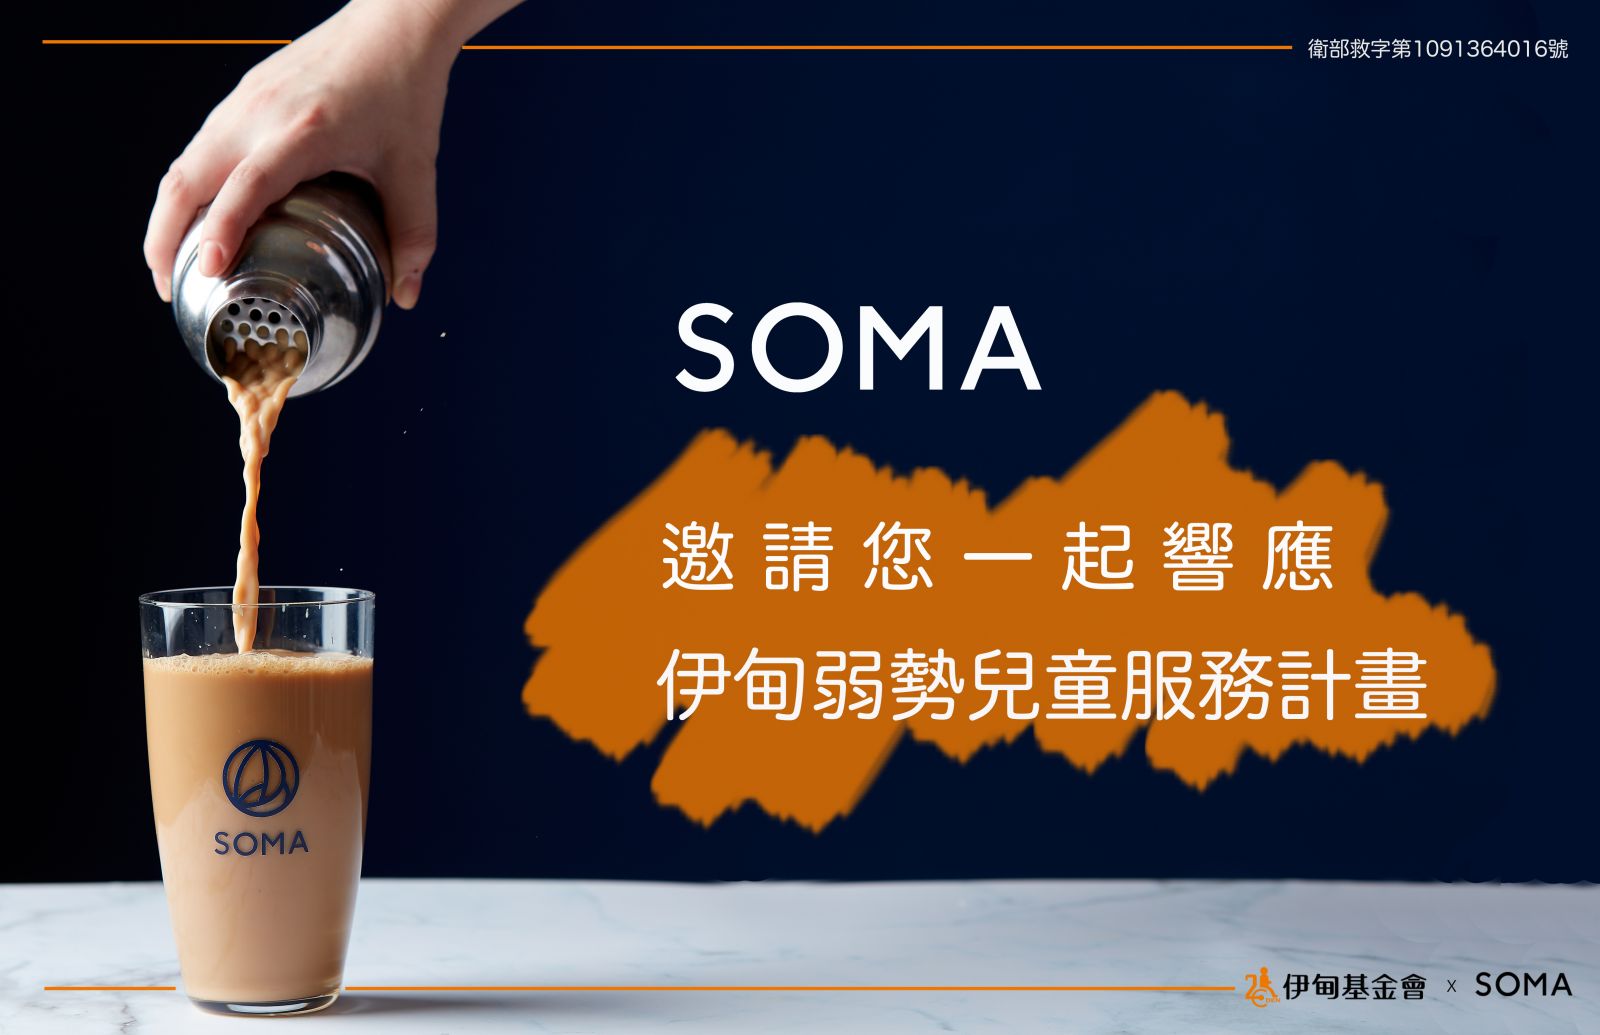 SOMA推出儿时记趣饮品 与您“伊”起助慢飞